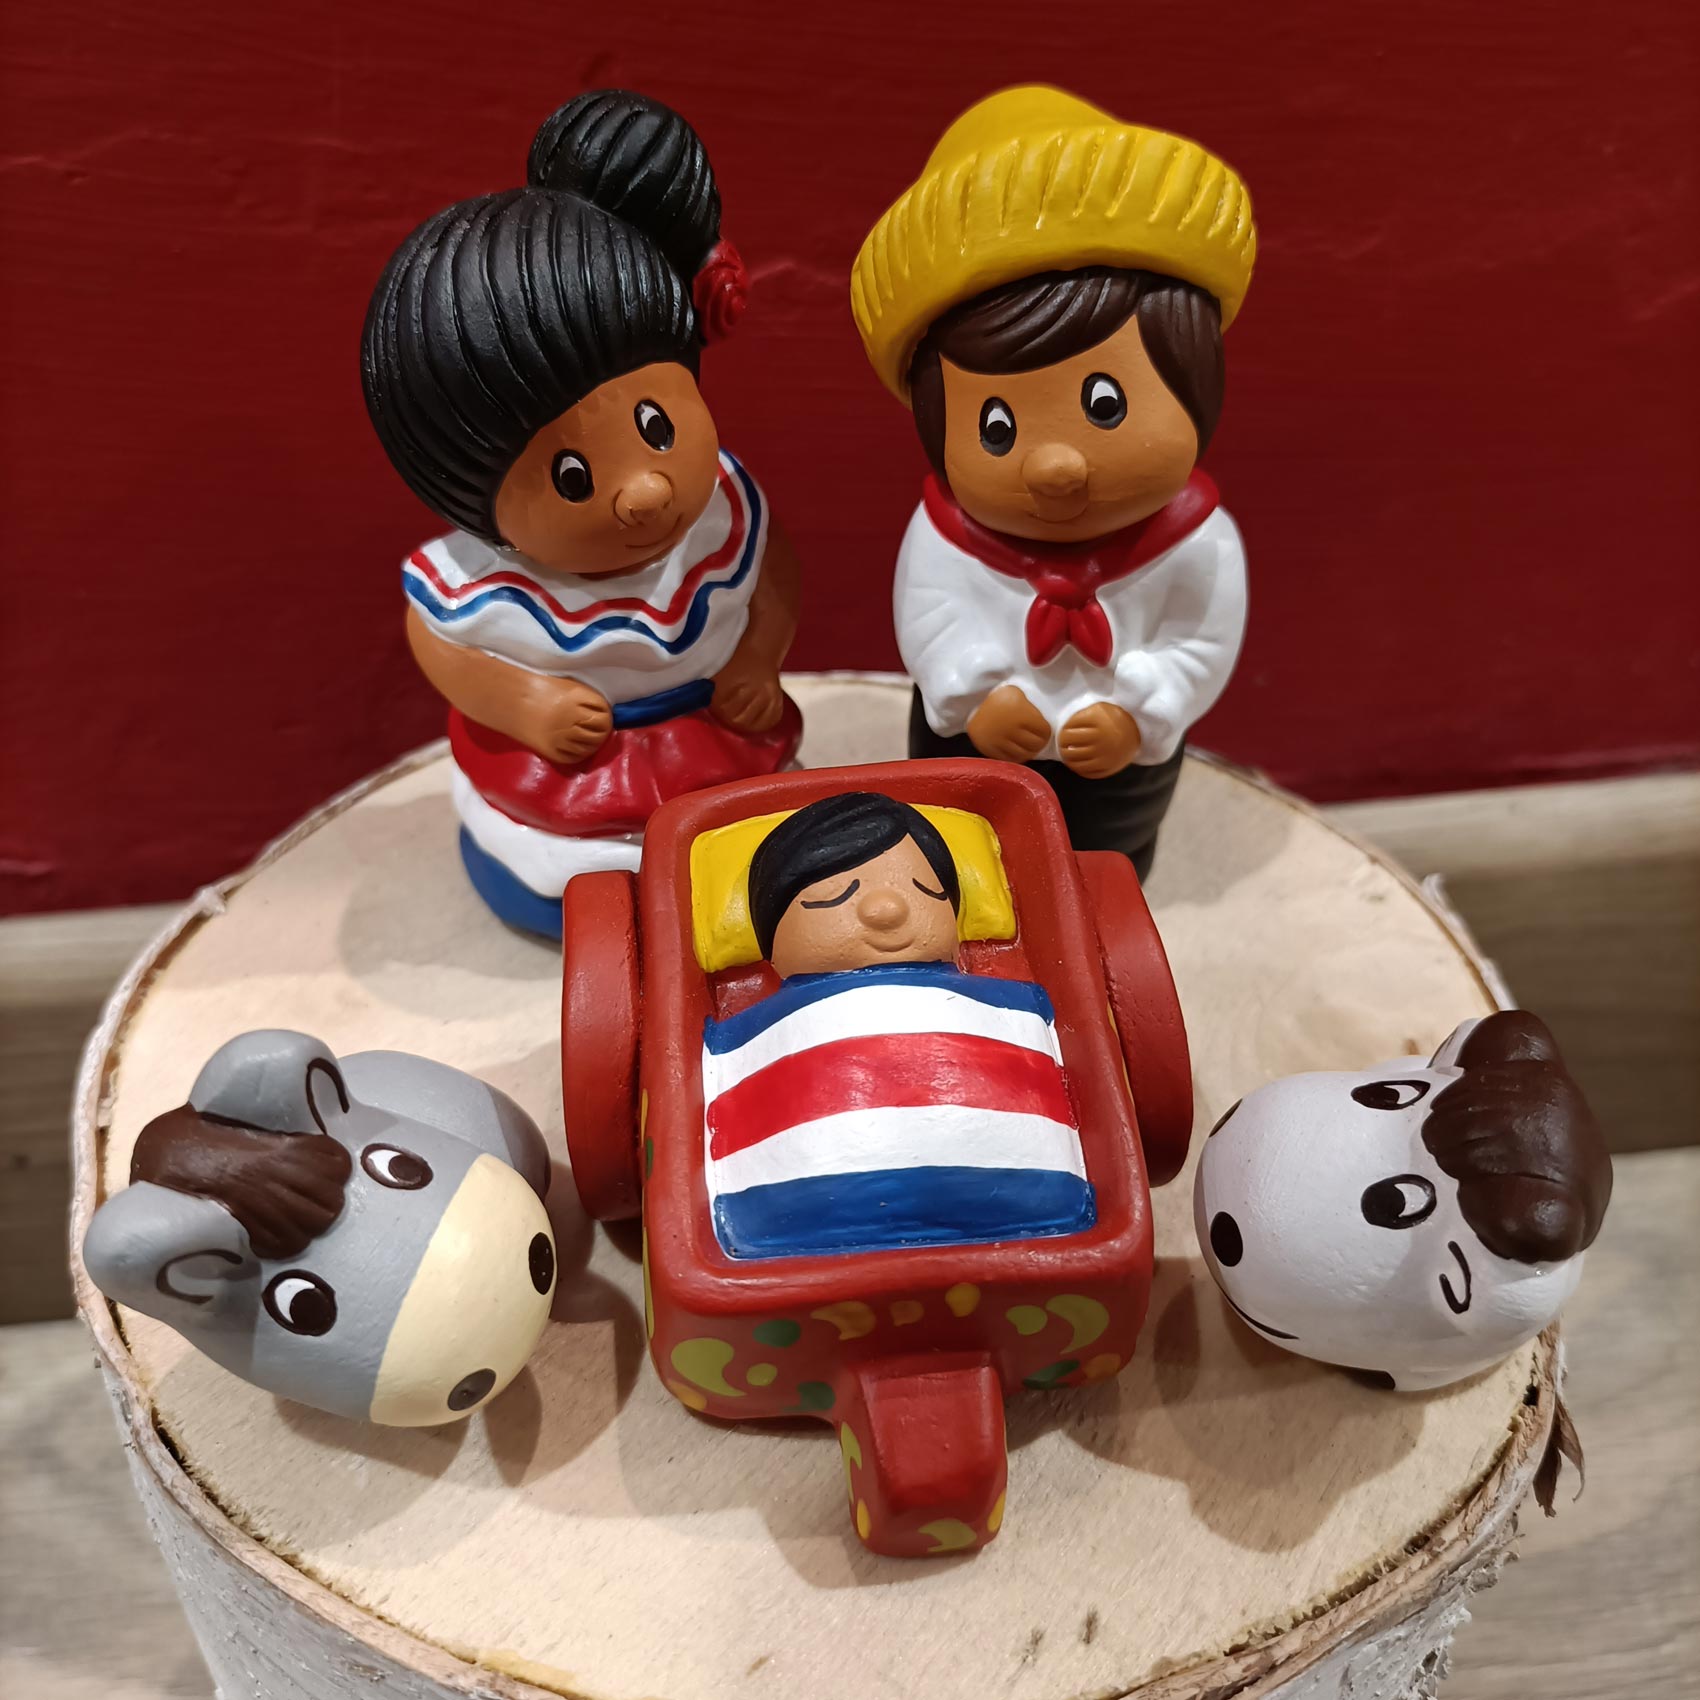 Natività in terracotta con colori accessi in cui i personaggi vestono i vestiti tradizionali del Paraguay